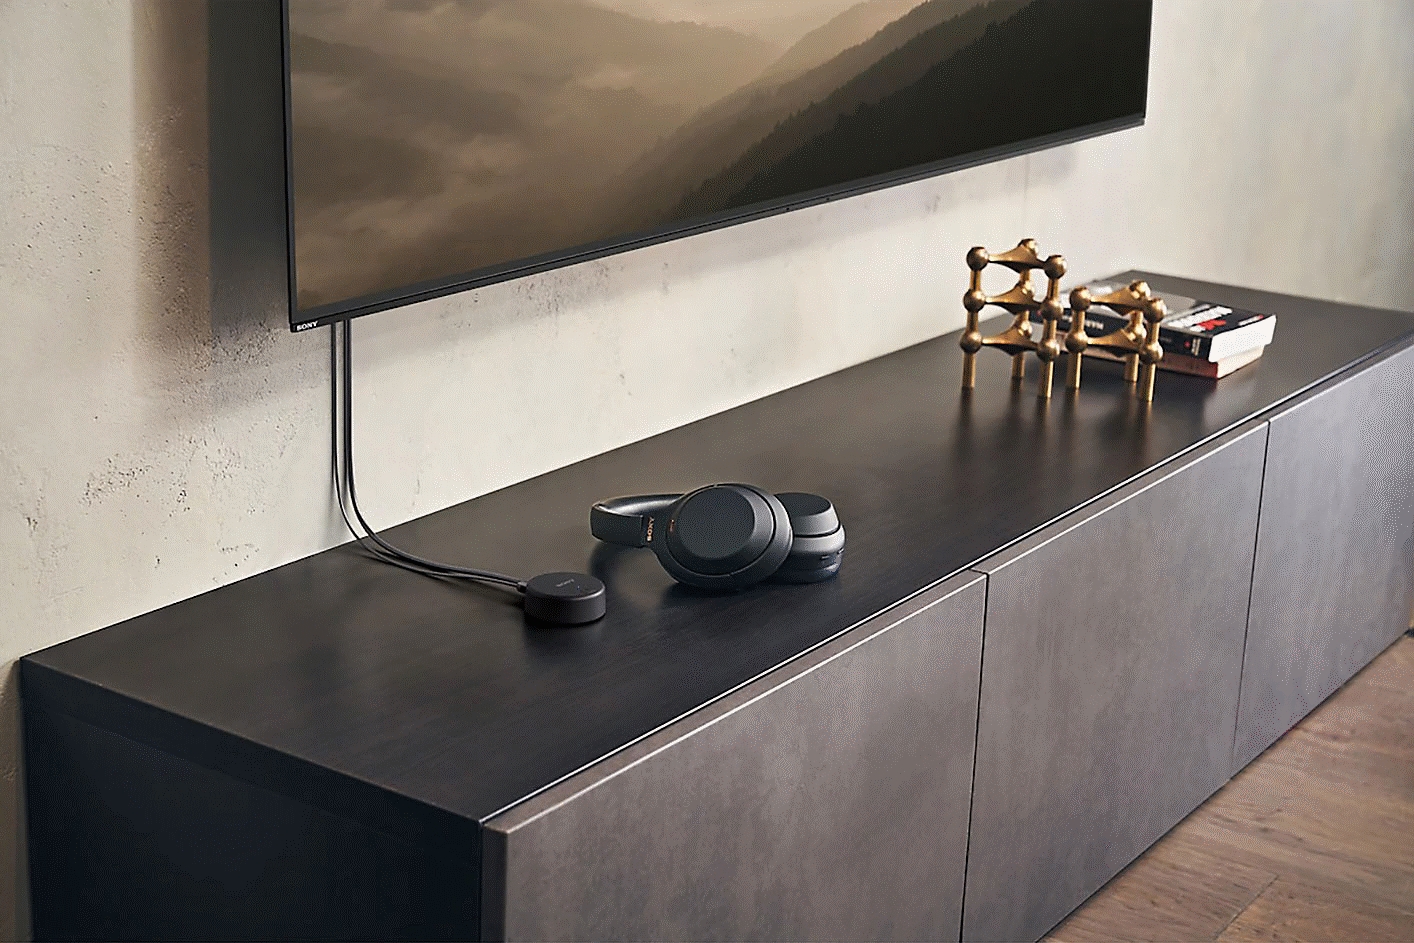 Изображение на чифт черни слушалки Sony WH-CH520, оставени върху телевизионно устройство под монтиран телевизор